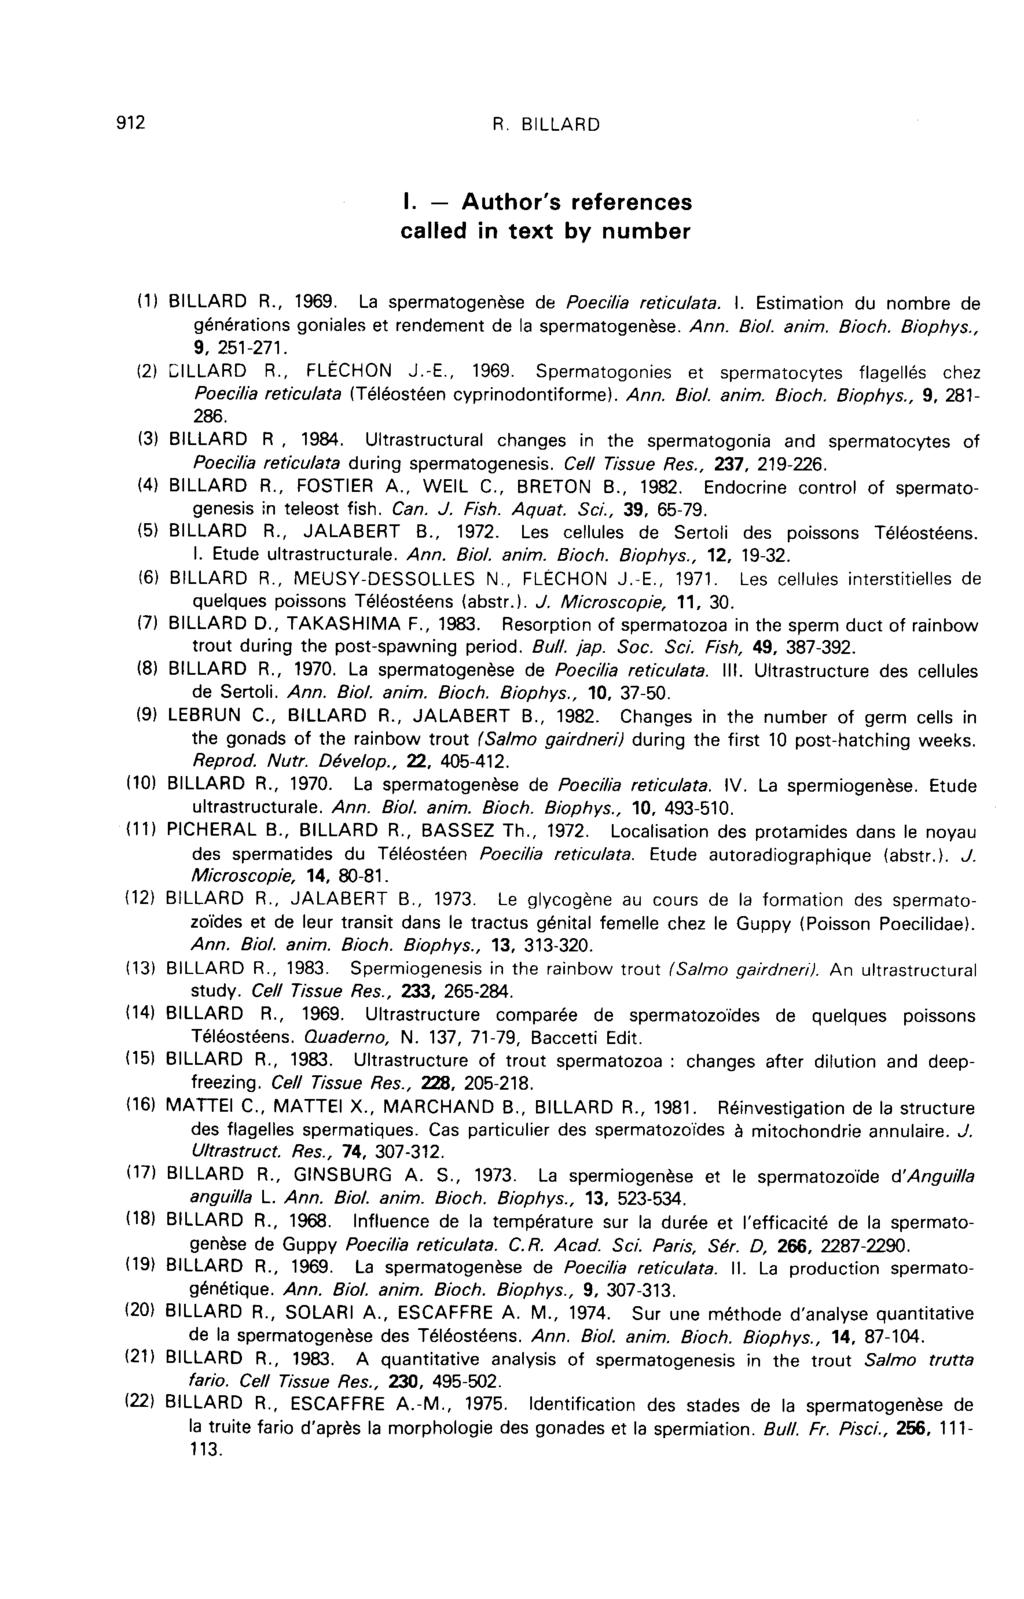 Author s - 1. references called in text by number (1) BILLARD R., 1969. La spermatogen6se de Poecilia reticulata. I. Estimation du nombre de generations goniales et rendement de la spermatogen6se.